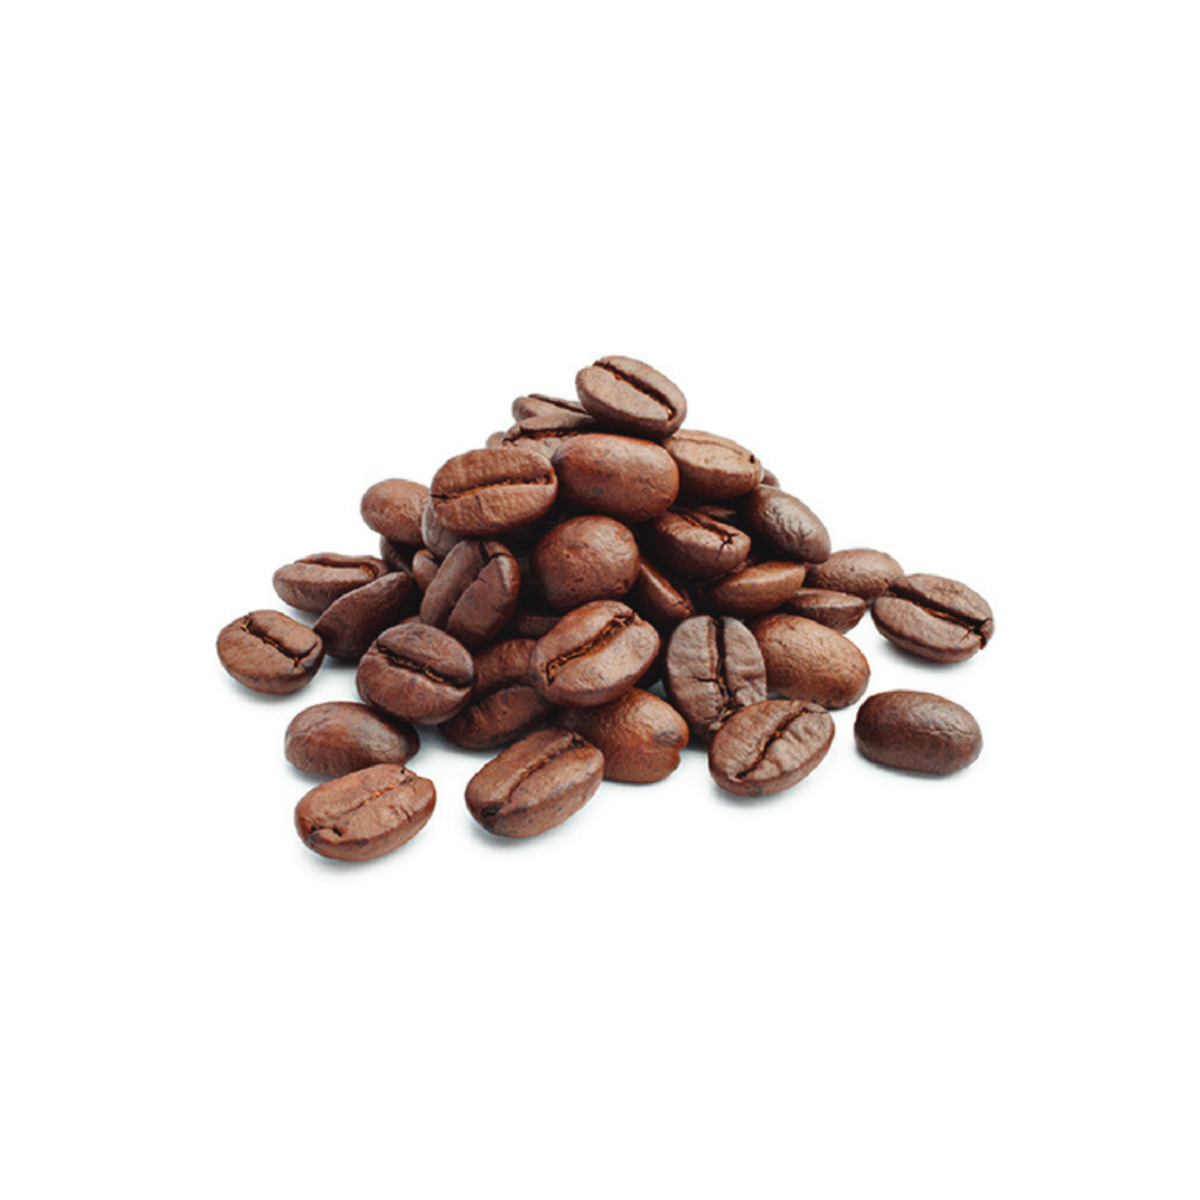 قهوة امريكية الوزن التقريبي 500 جم